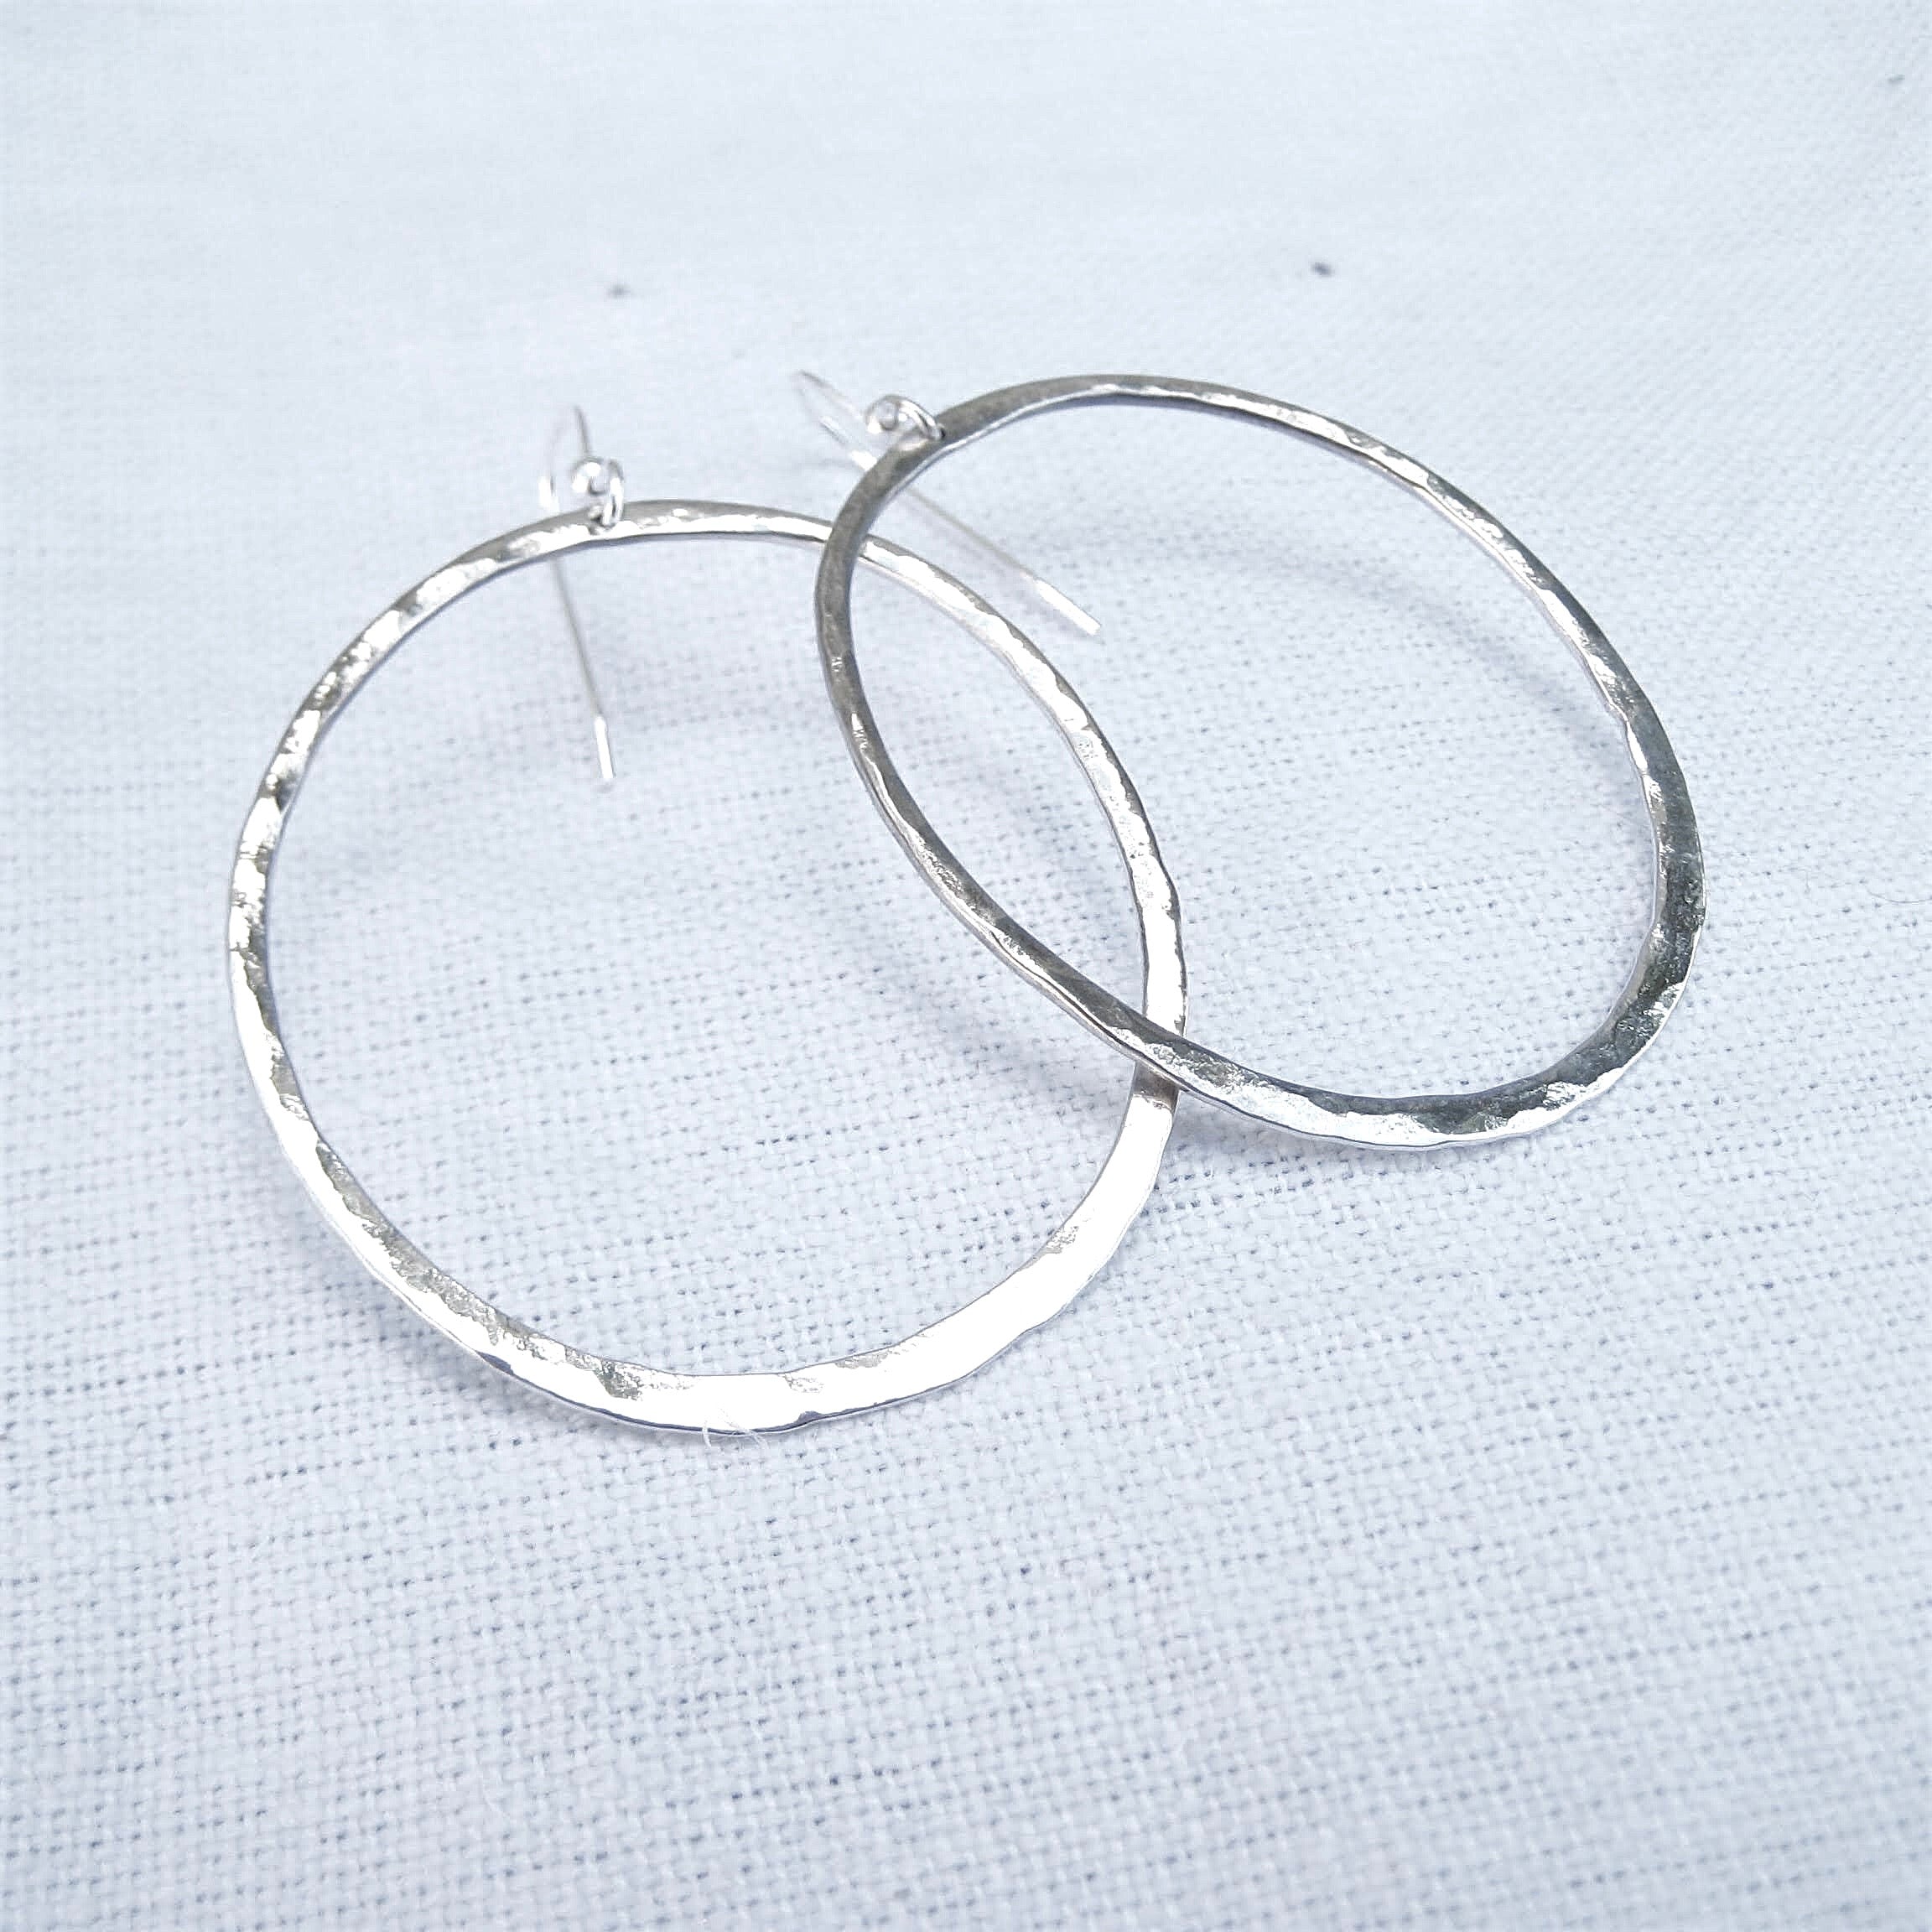 Hammered Loop earrings